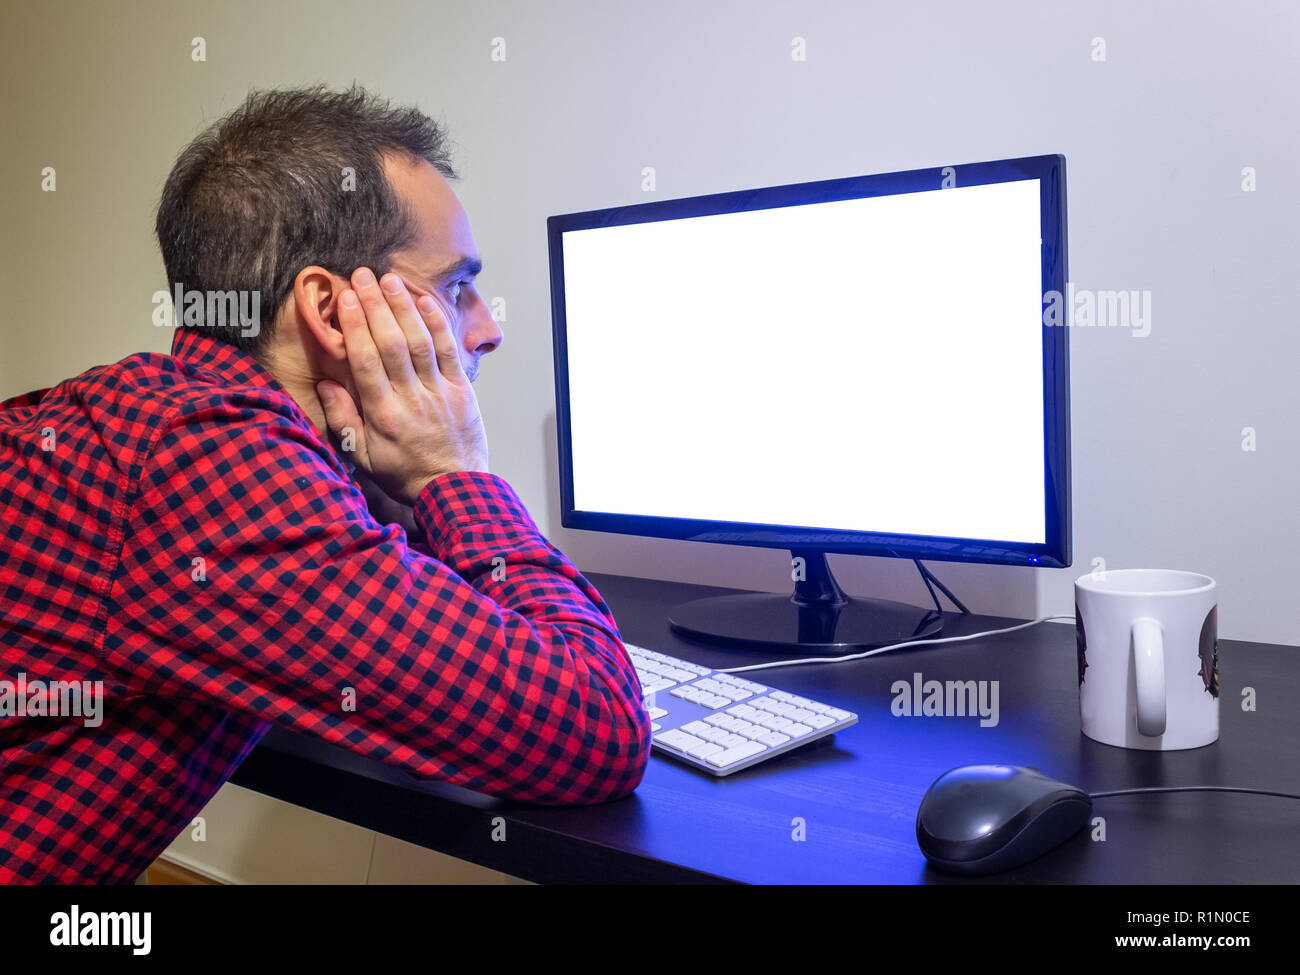 Überrascht Mann starrt Office Computer auf Holz schwarz Schreibtisch Mockup. Gestrichelte rote Shirt, LCD-Bildschirm, Tastatur, Maus, weiße Tasse. Kopieren Sie Platz. Stockfoto